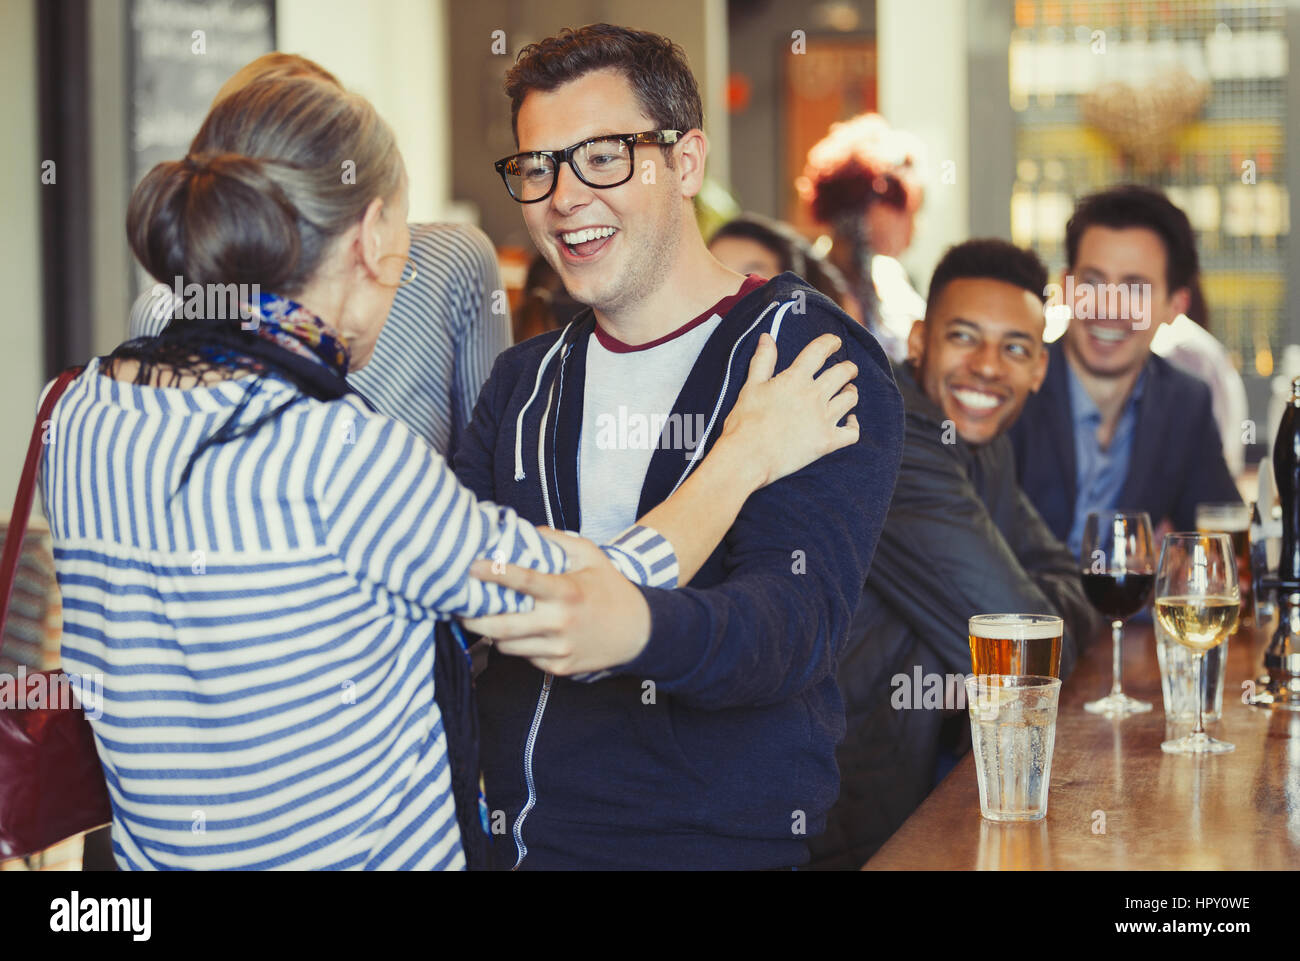 Enthusiastic man and woman greeting at bar Stock Photo